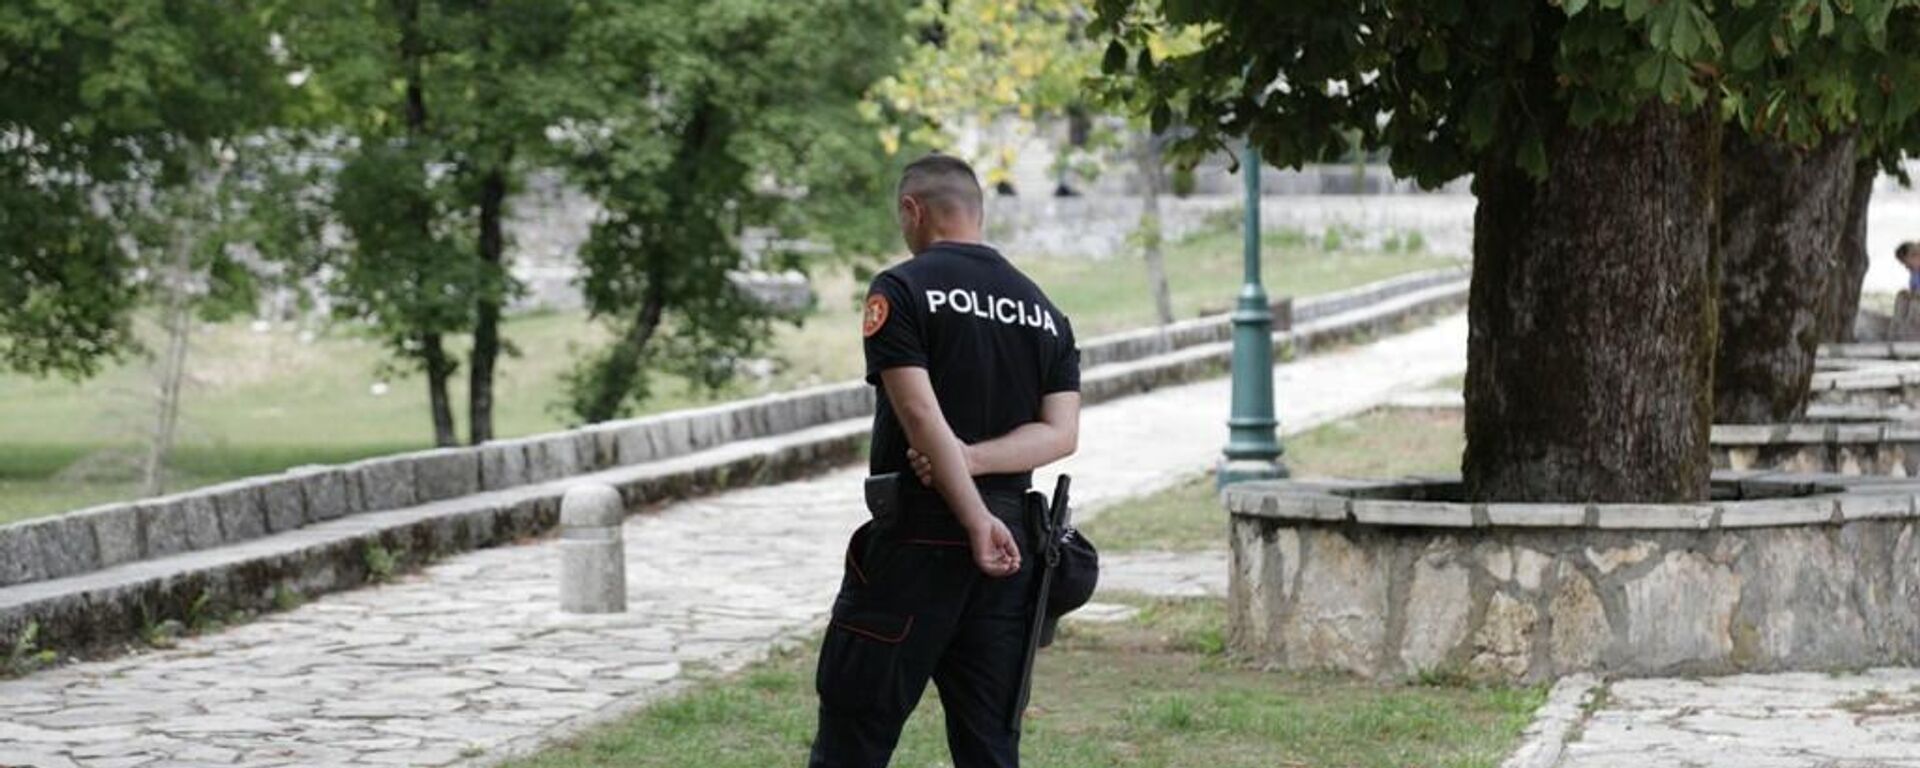 Полиција дежура у комплексу Цетињског манастира - Sputnik Србија, 1920, 08.09.2021